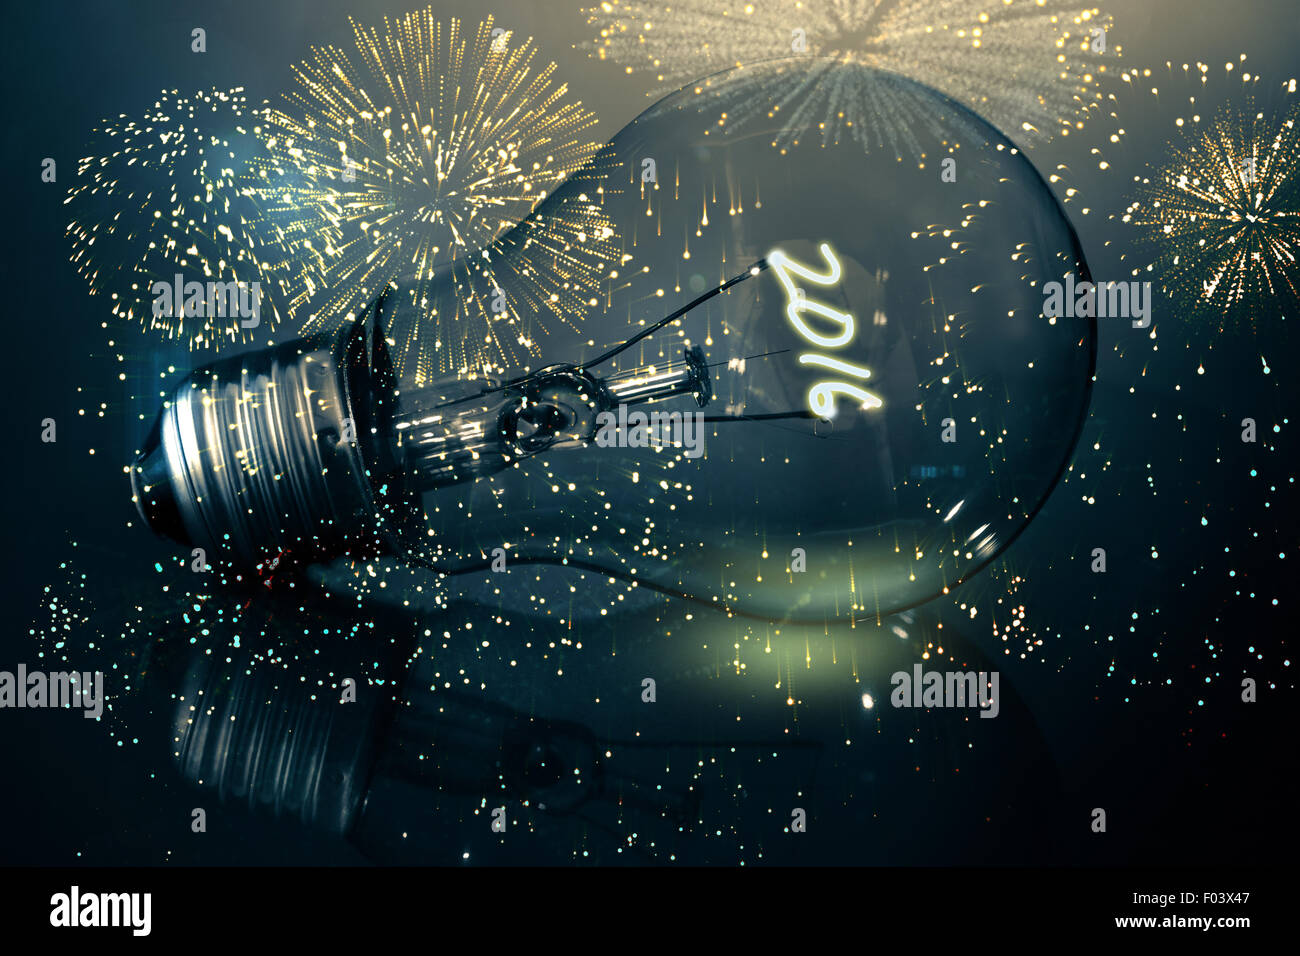 Immagine composita di coloratissimi fuochi d'artificio impazza su sfondo nero Foto Stock